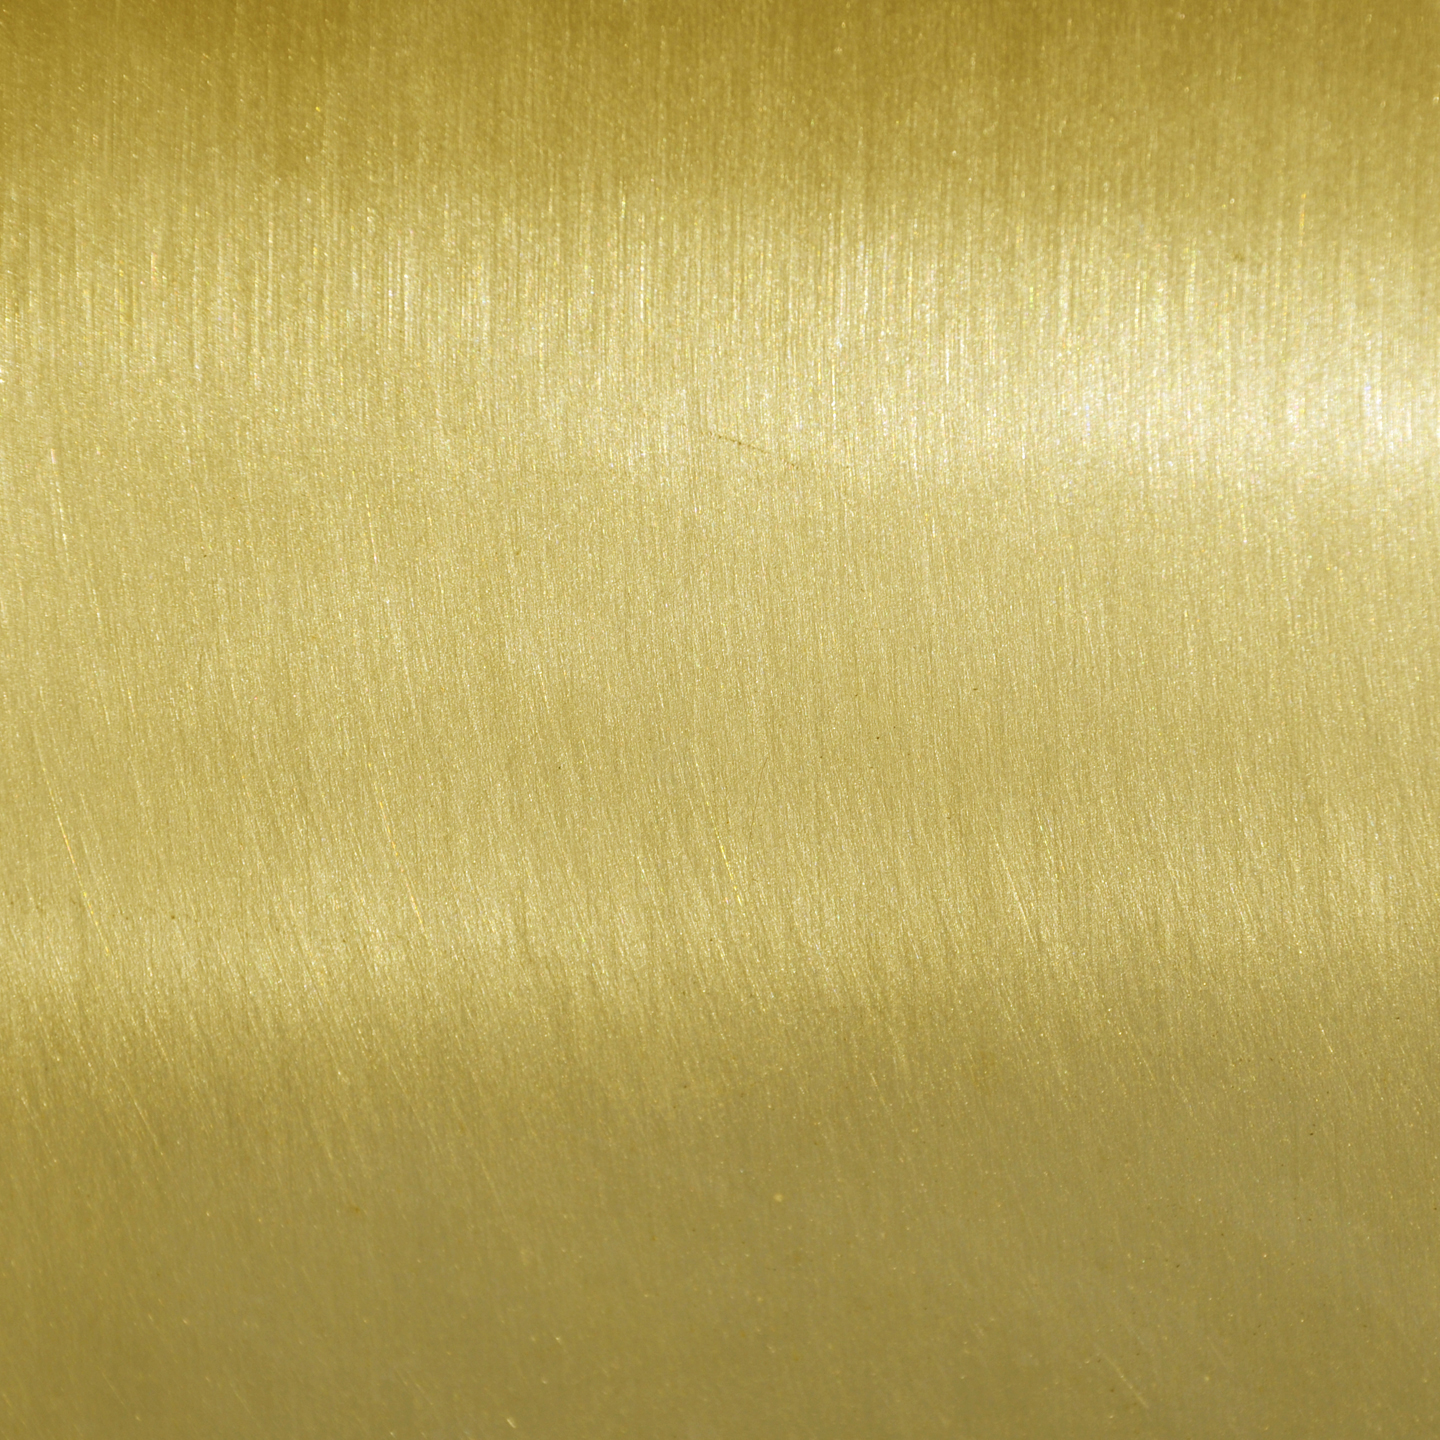 HD wallpaper pipes brass tube art gold metal backgrounds full frame   Wallpaper Flare